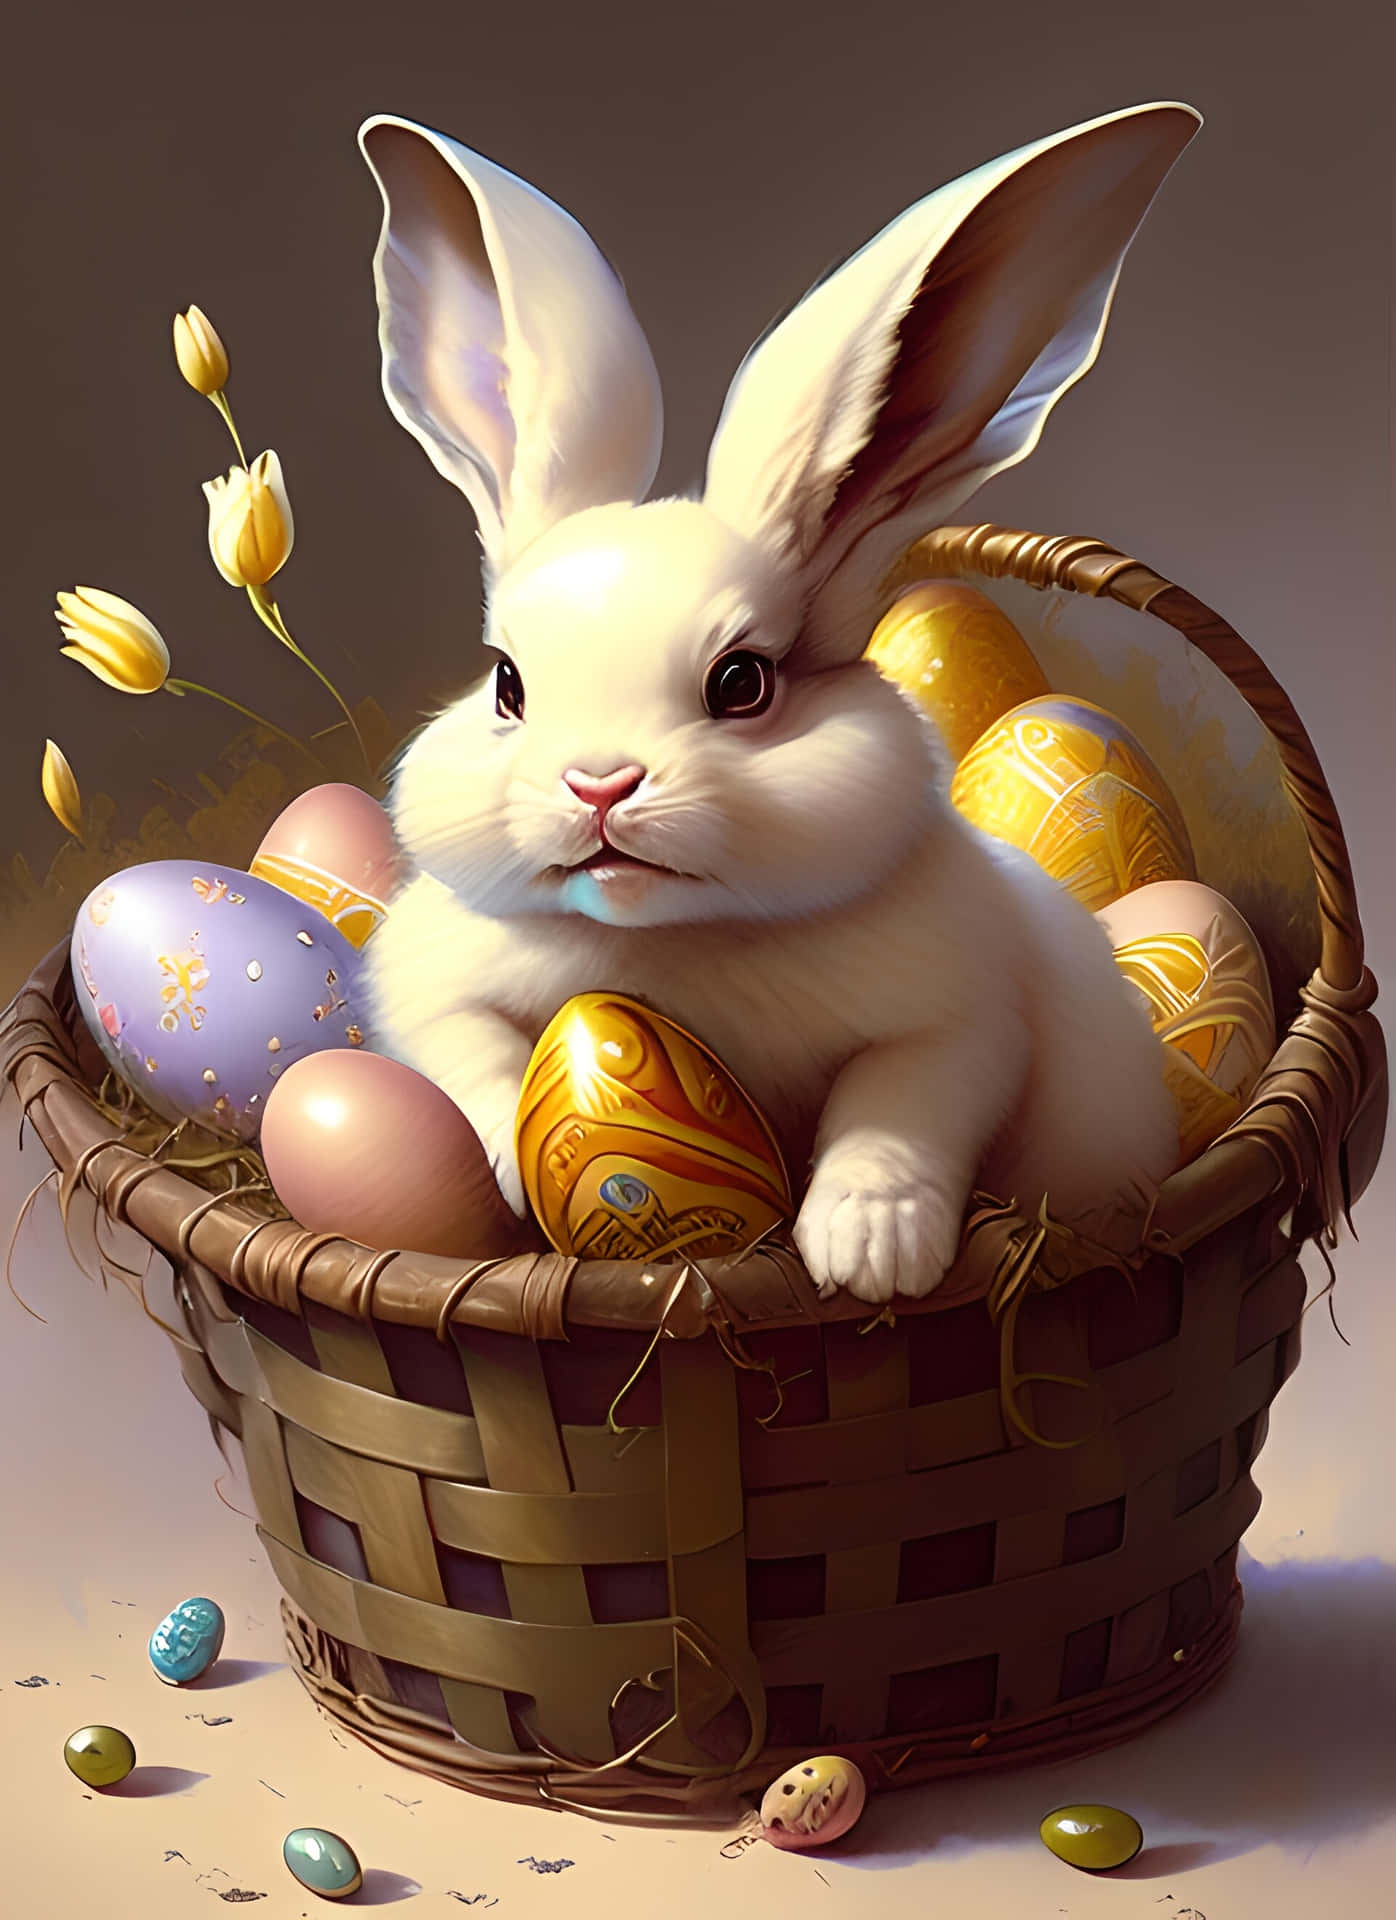 Imagendivertida De Un Conejo De Pascua Dentro De Una Canasta De Huevos De Pascua